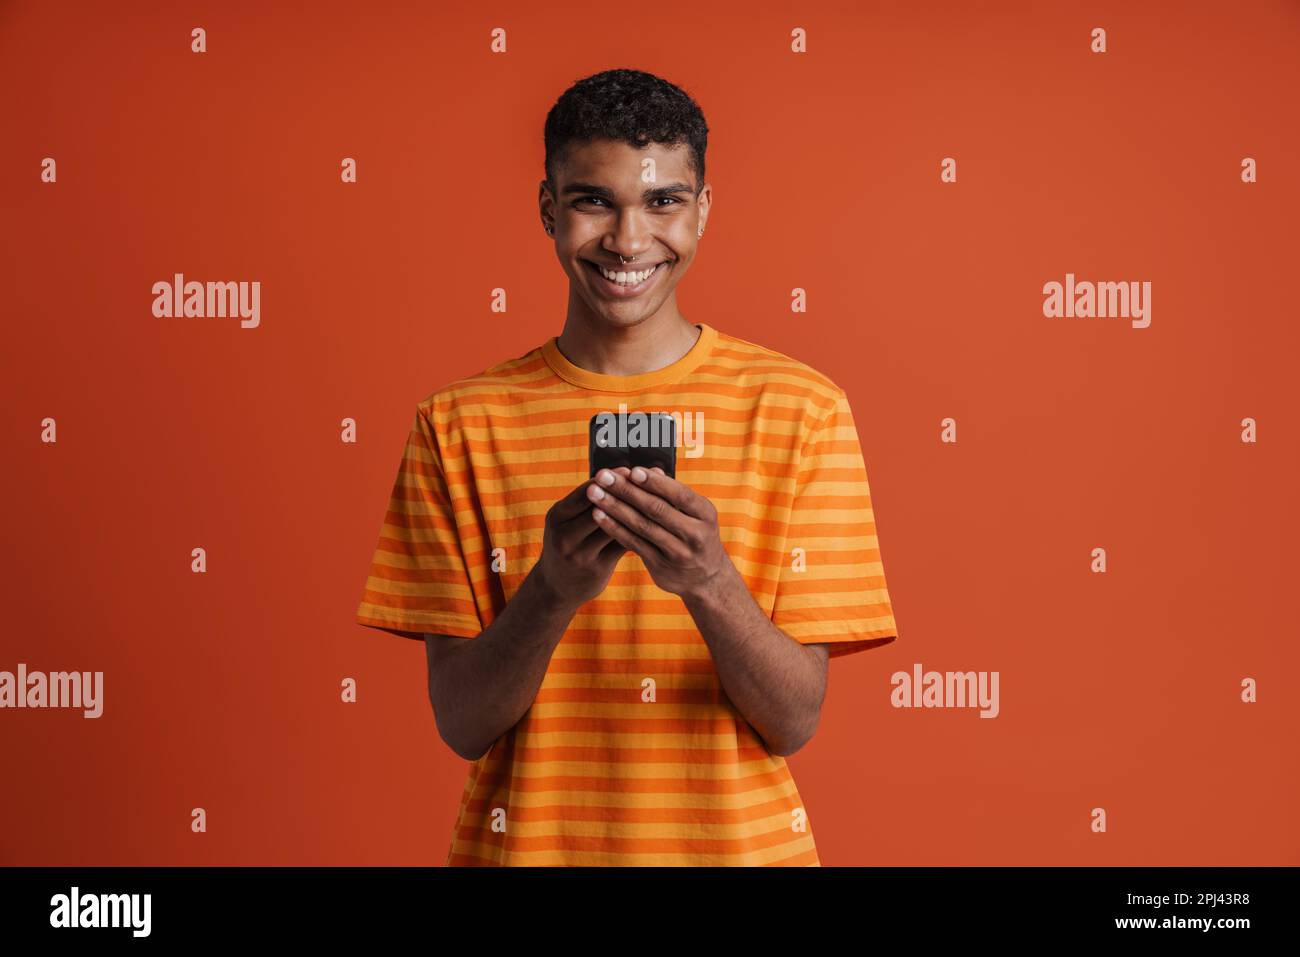 Ein junger, gut aussehender afrikaner mit Piercings, der sein Handy hielt und in die Kamera schaute, während er über einem isolierten orangefarbenen Hintergrund stand Stockfoto